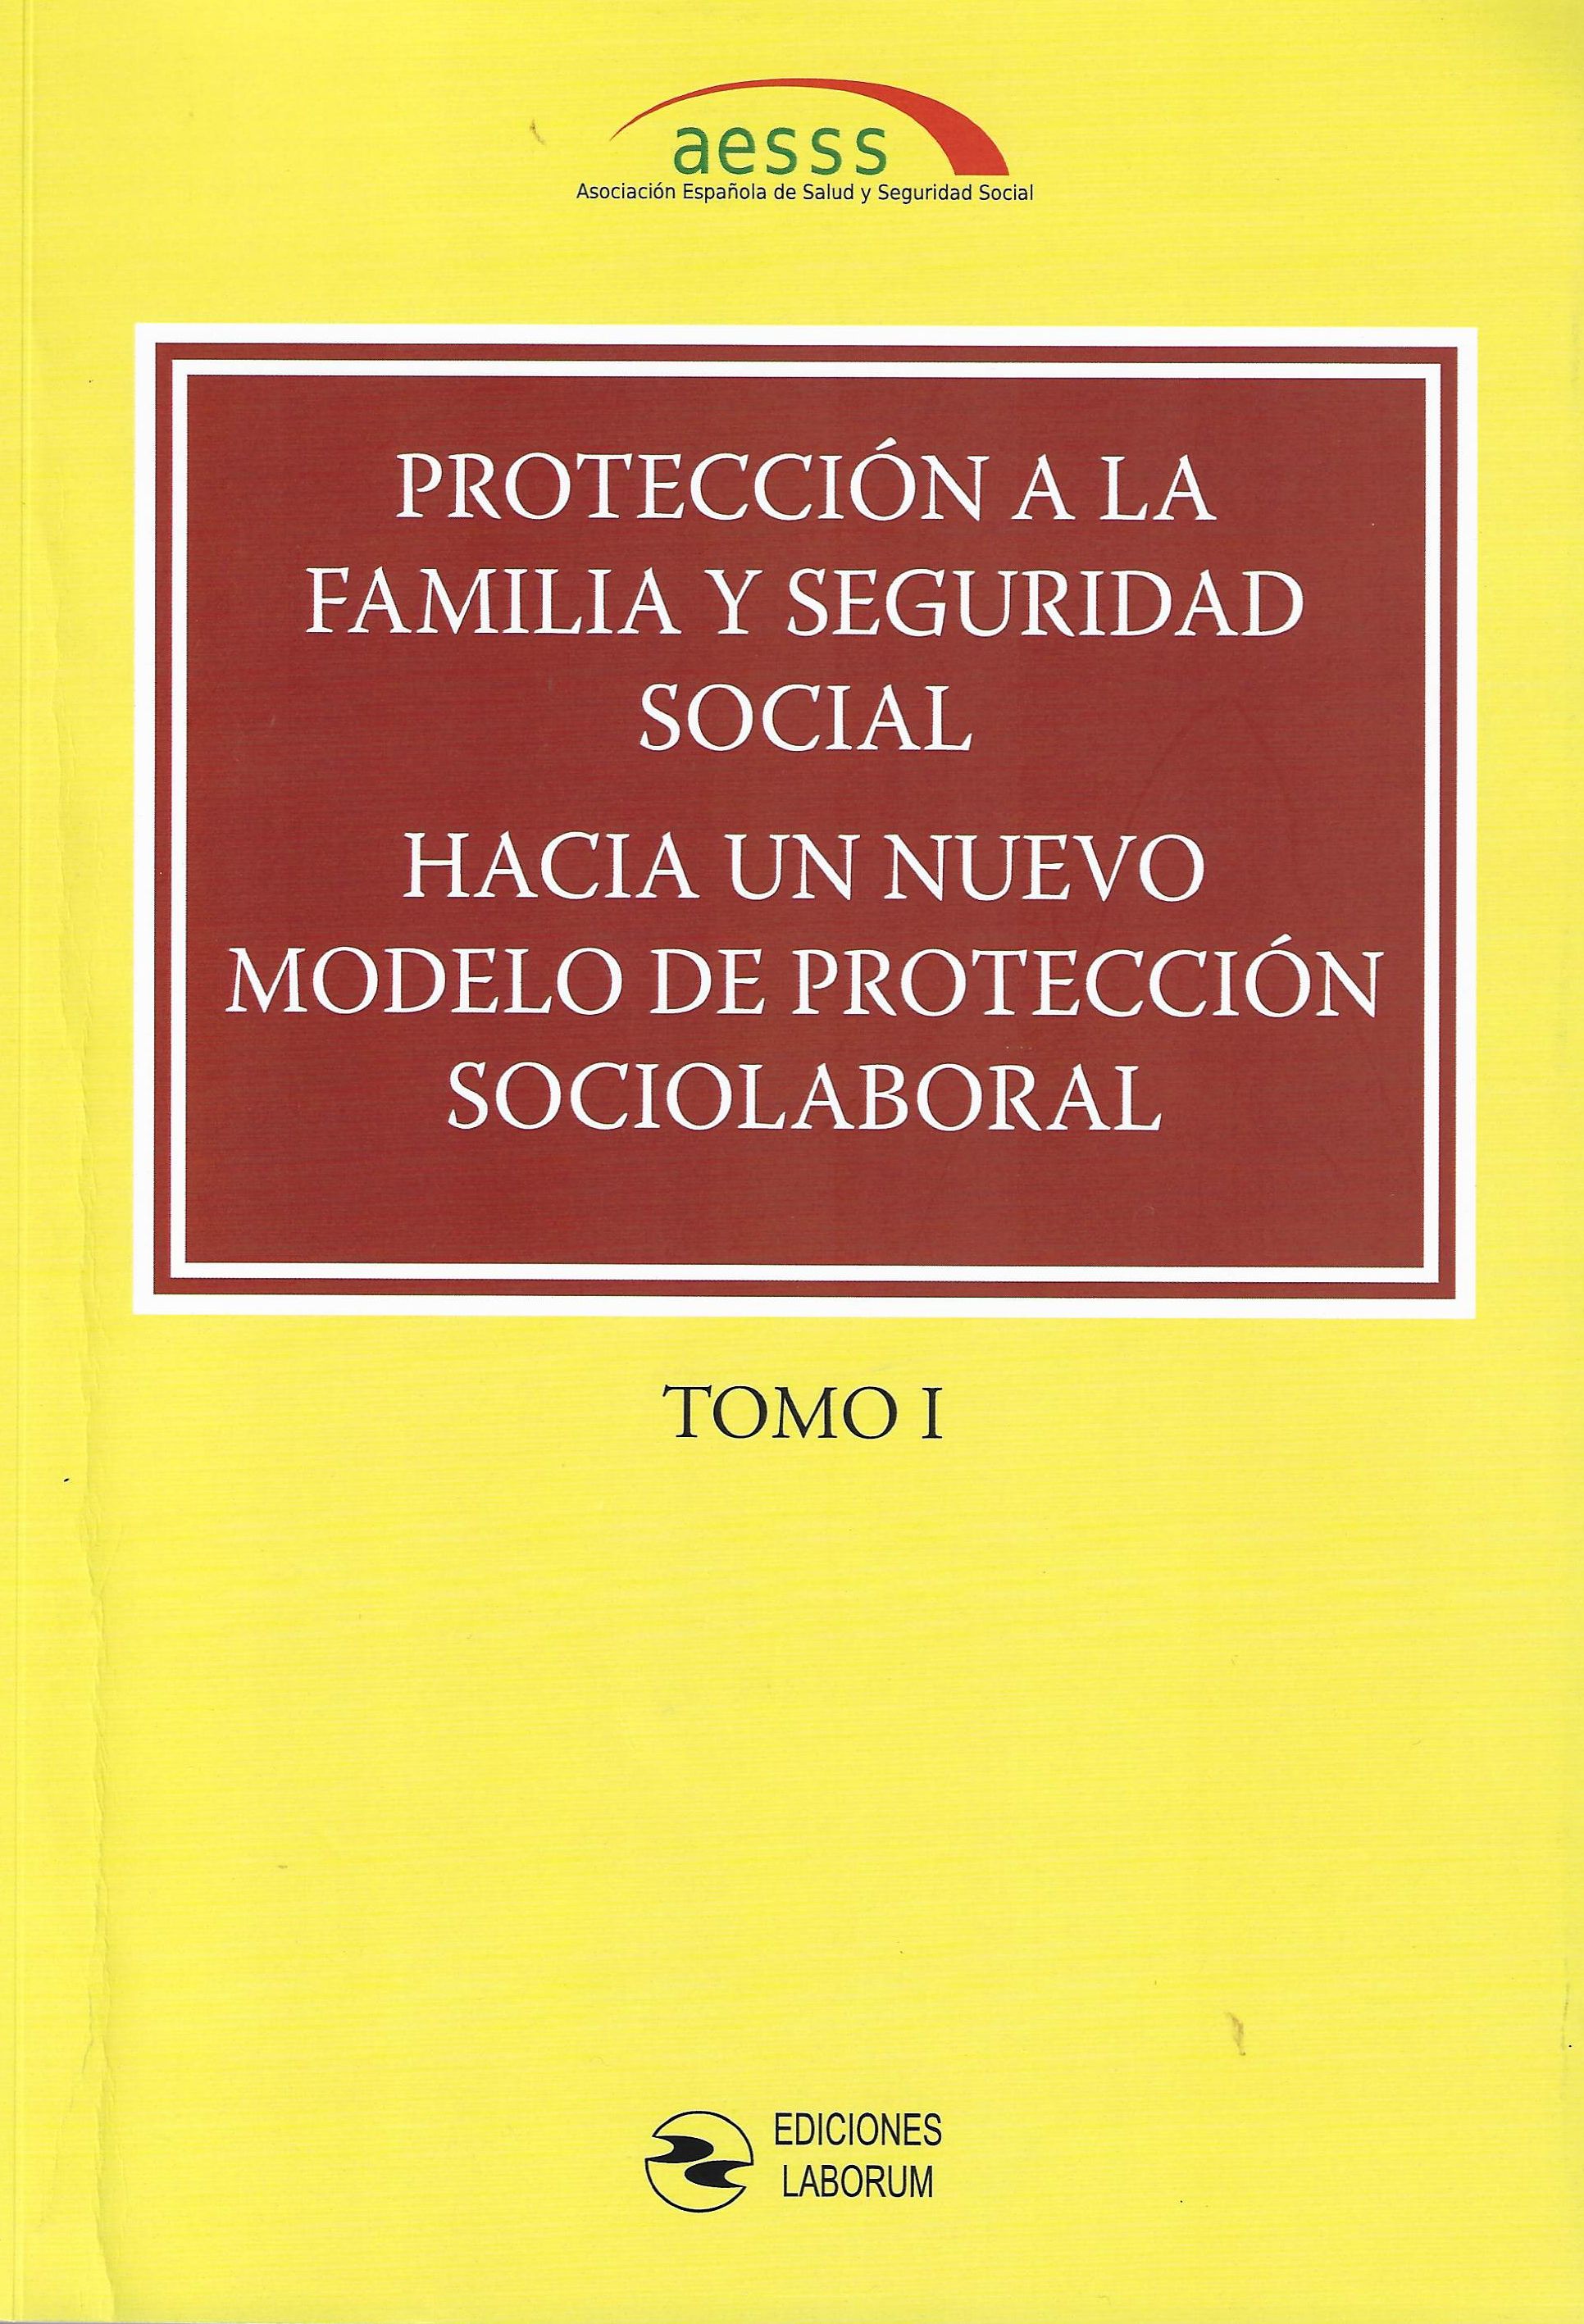 Imagen de portada del libro Protección a la Familia y Seguridad Social